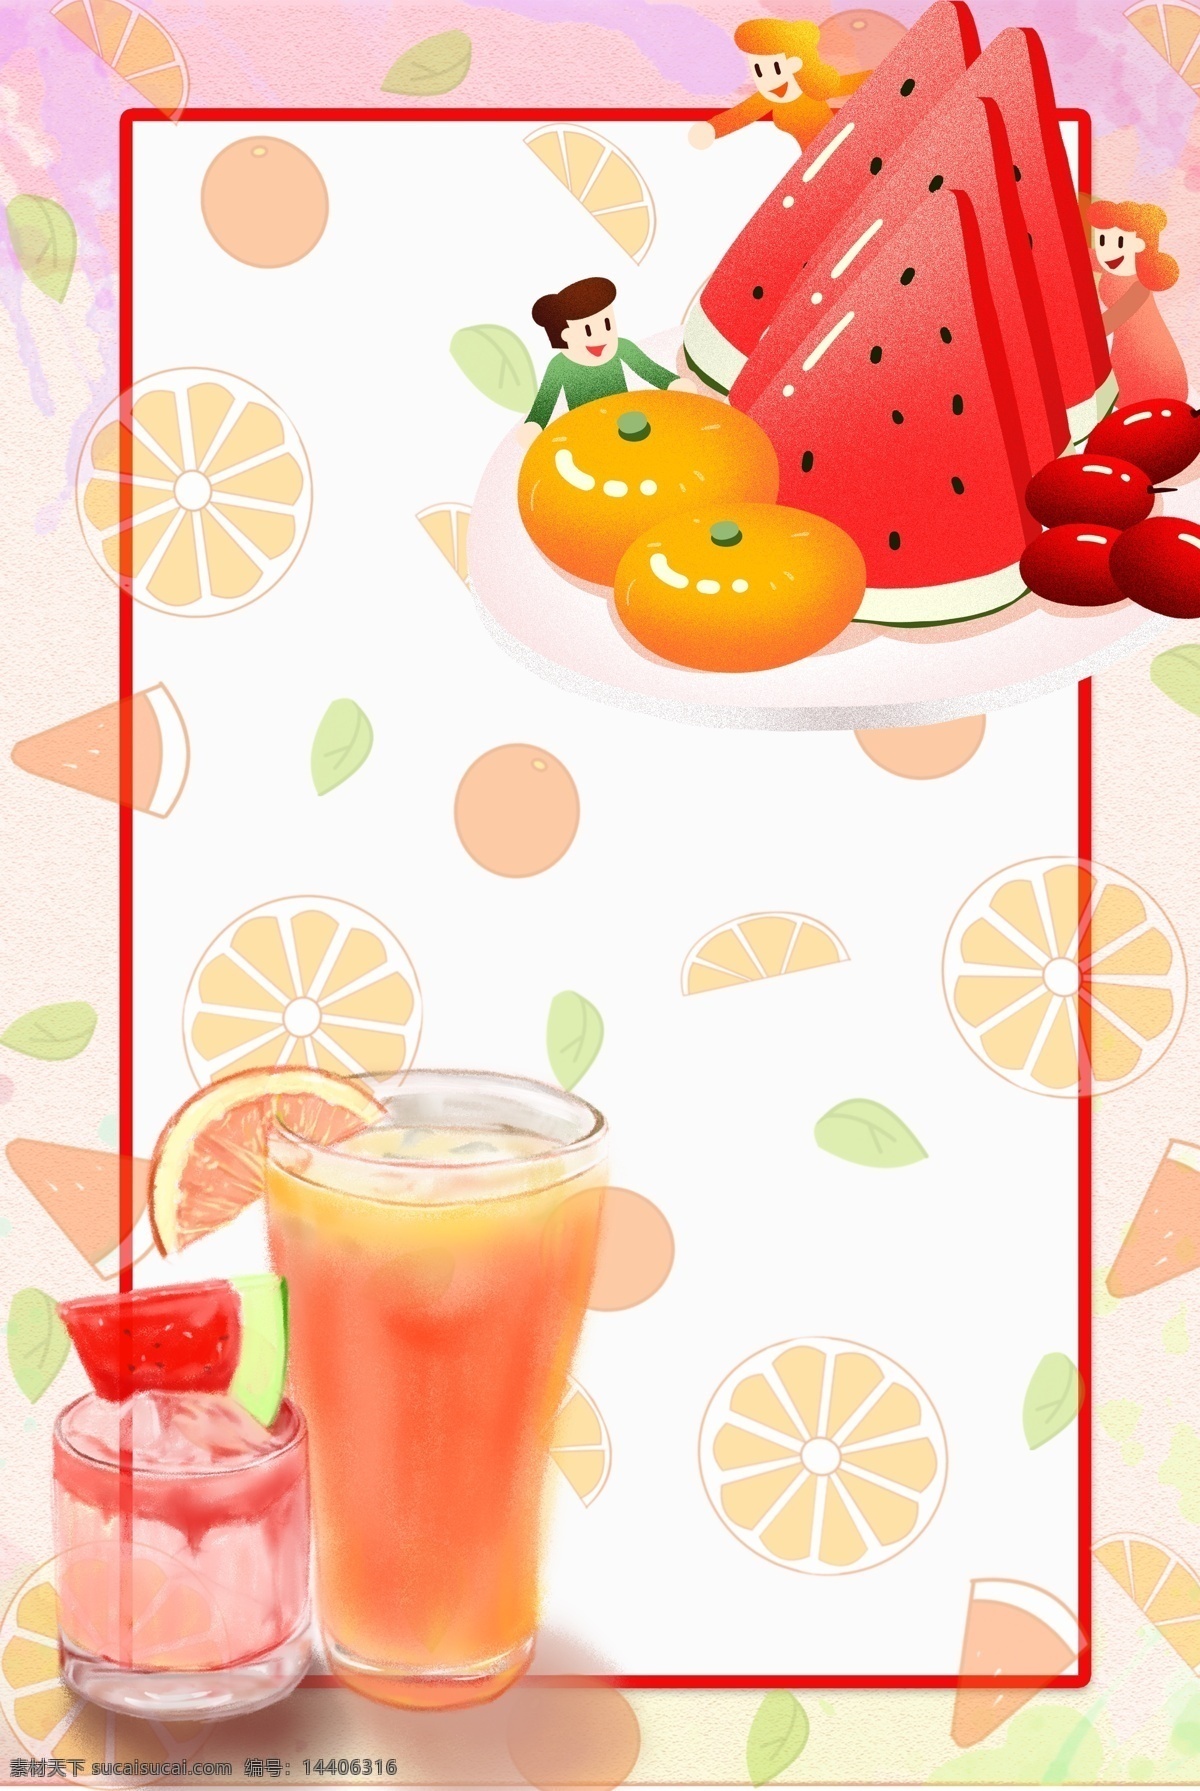 夏季 水果 果汁 背景 创意边框 可爱风格 海报边框 节日涂鸦 夏天 手绘 方形 西瓜 边框